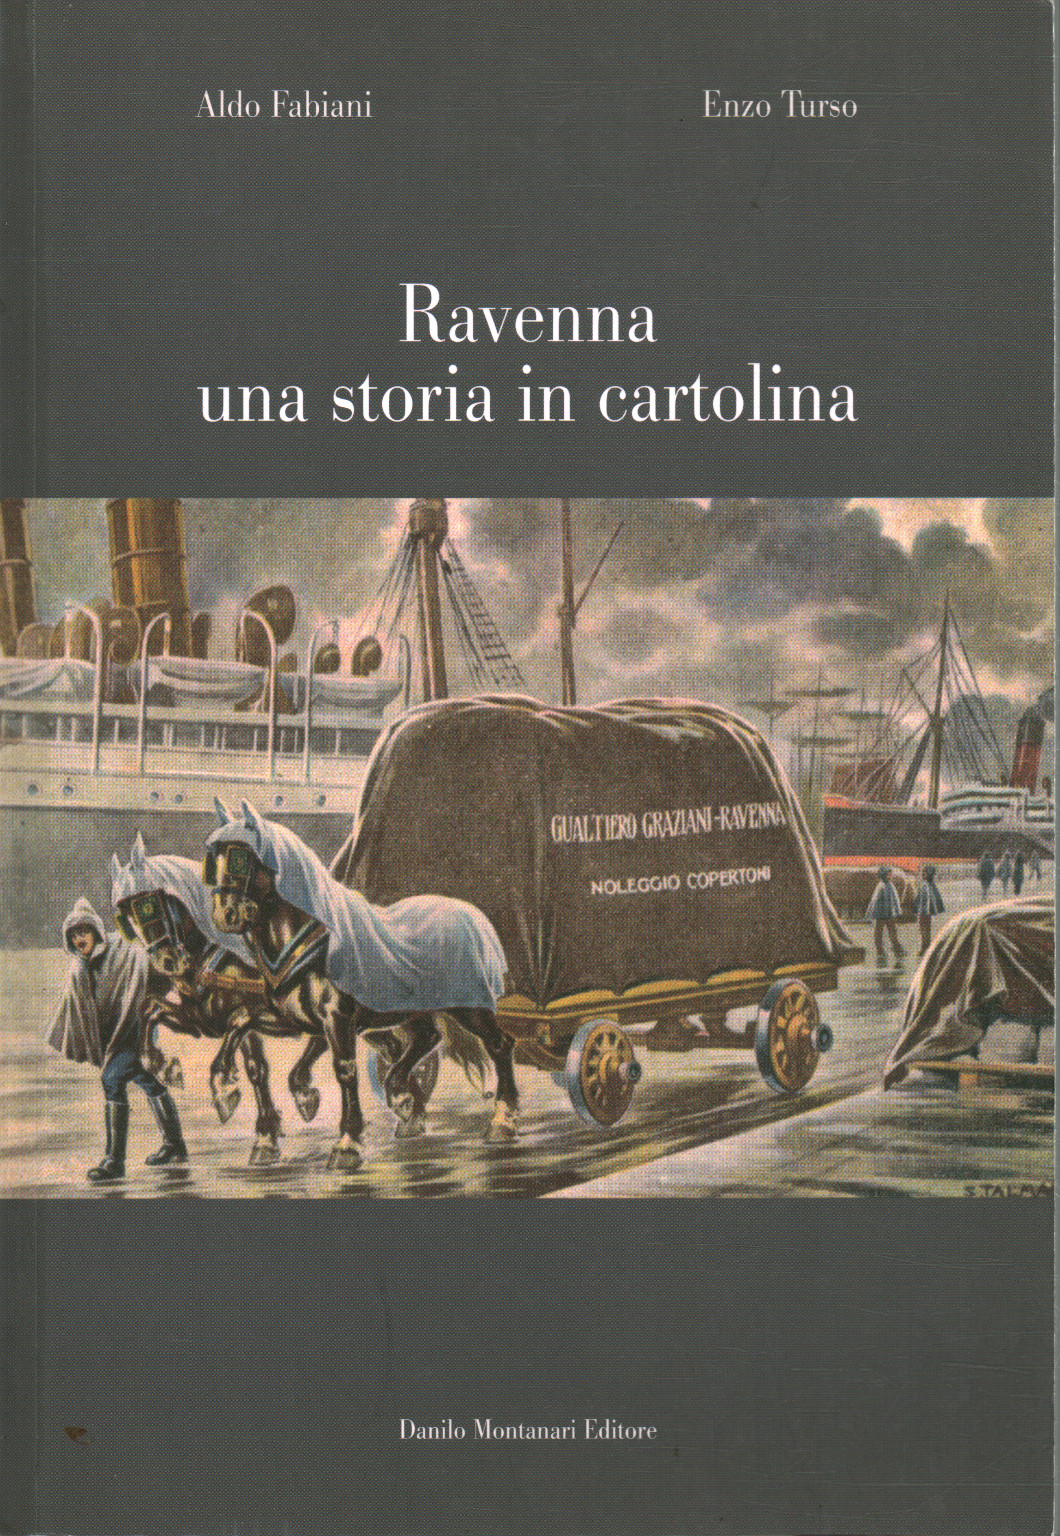 Ravenna una historia en postal, Aldo Fabiani Enzo Turso